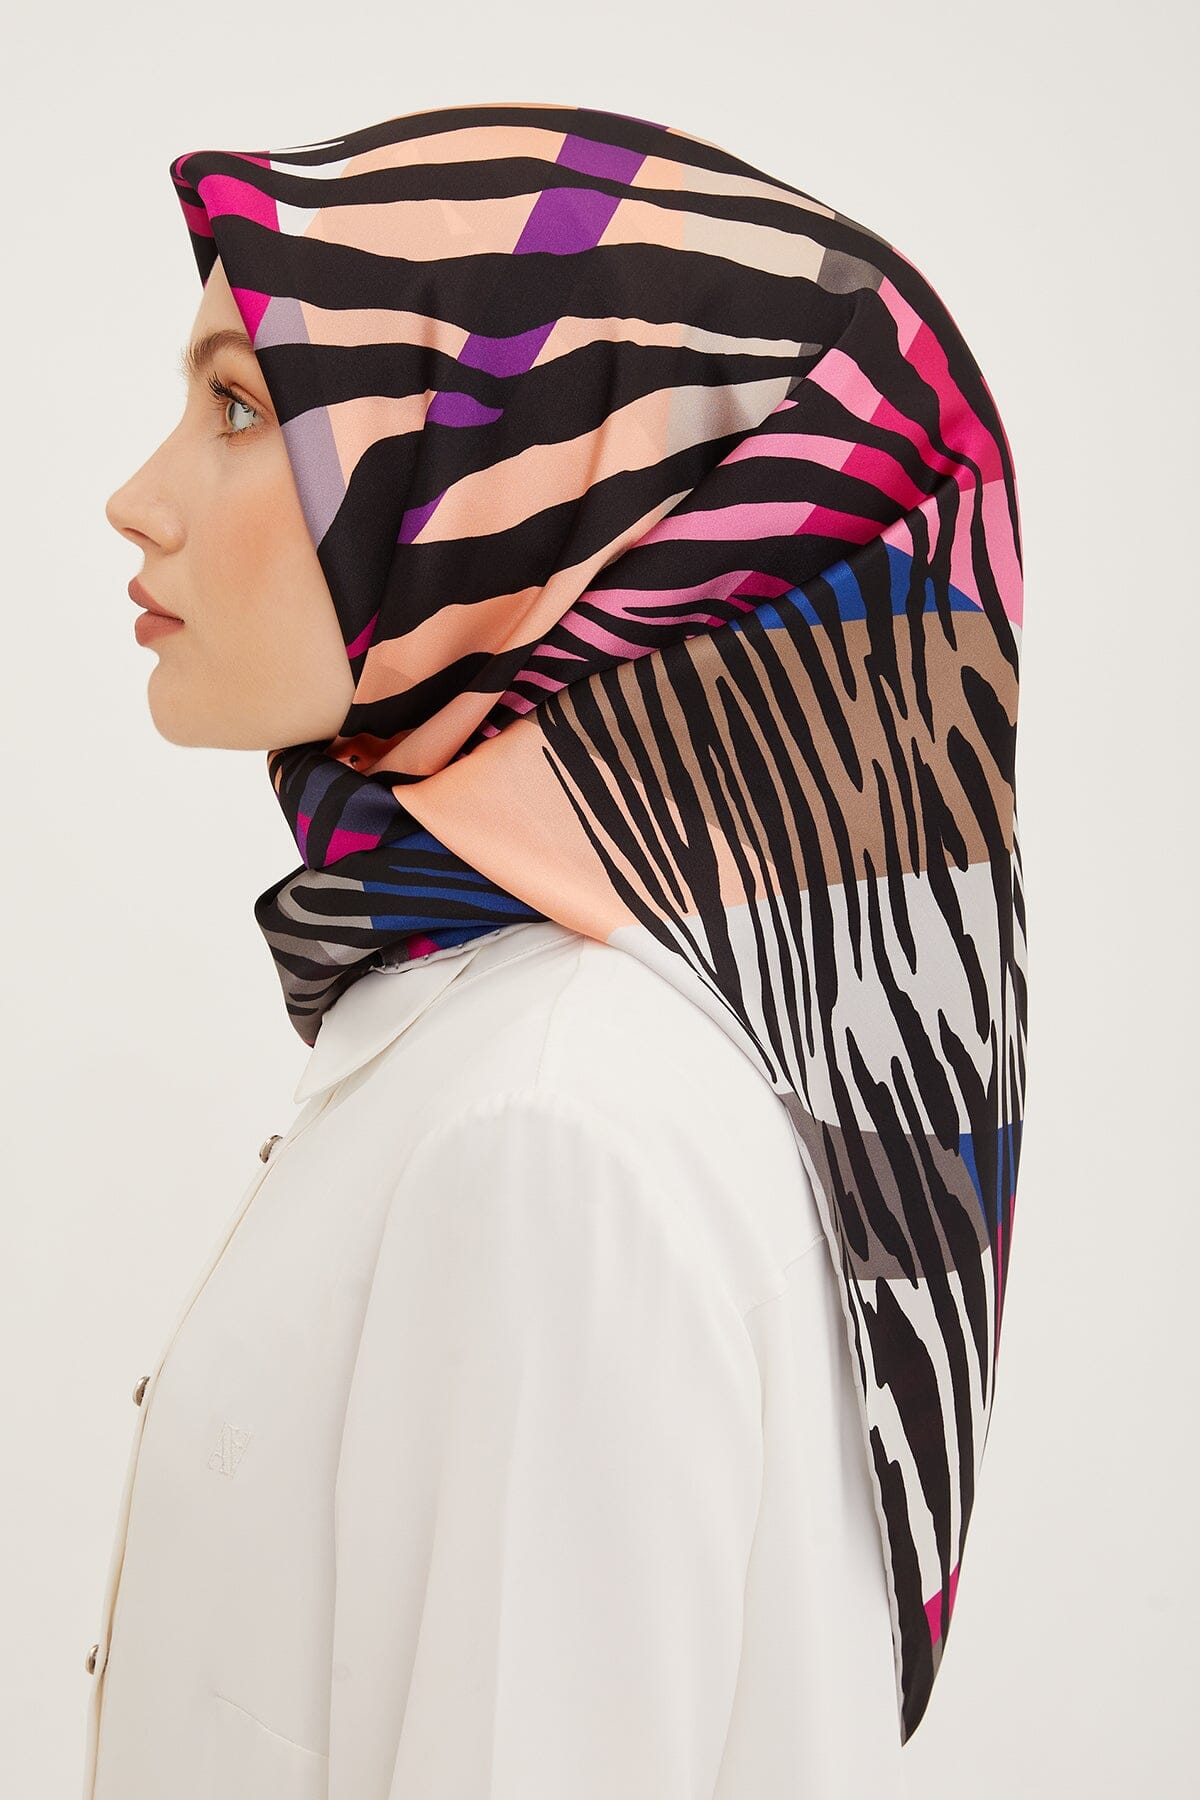 Armine Empower Women Silk Scarf #37 Silk Hijabs,Armine Armine 